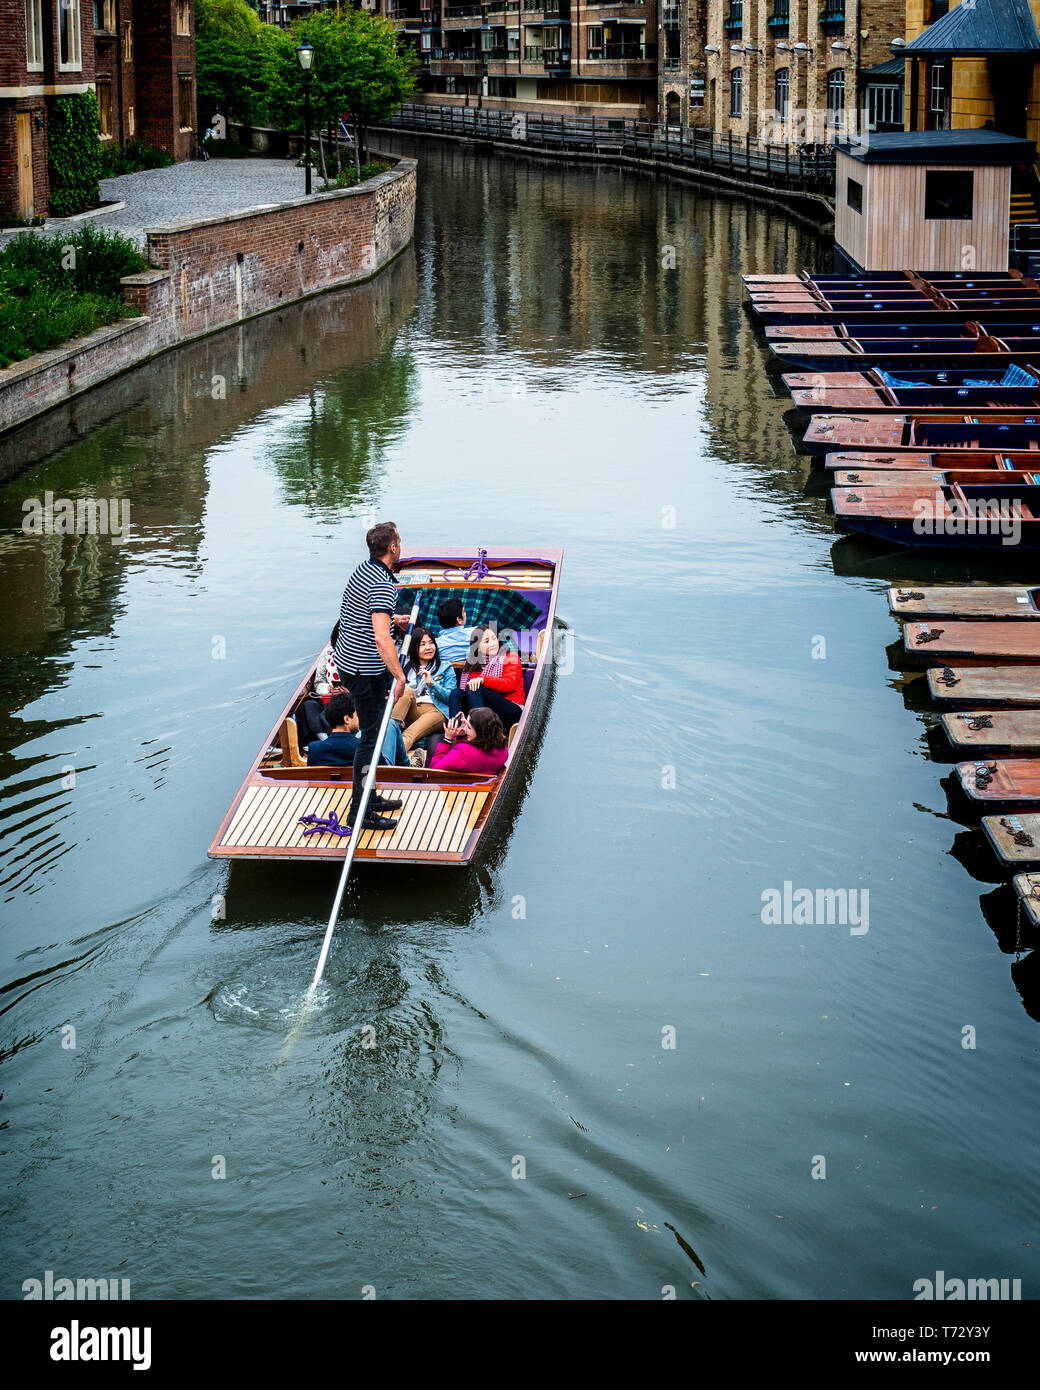 Touristen, die Cambridge Tourism punzen - Touristen nehmen einen Punt entlang der River Cam im Zentrum von Cambridge UK - Cambridge Punting Stockfoto